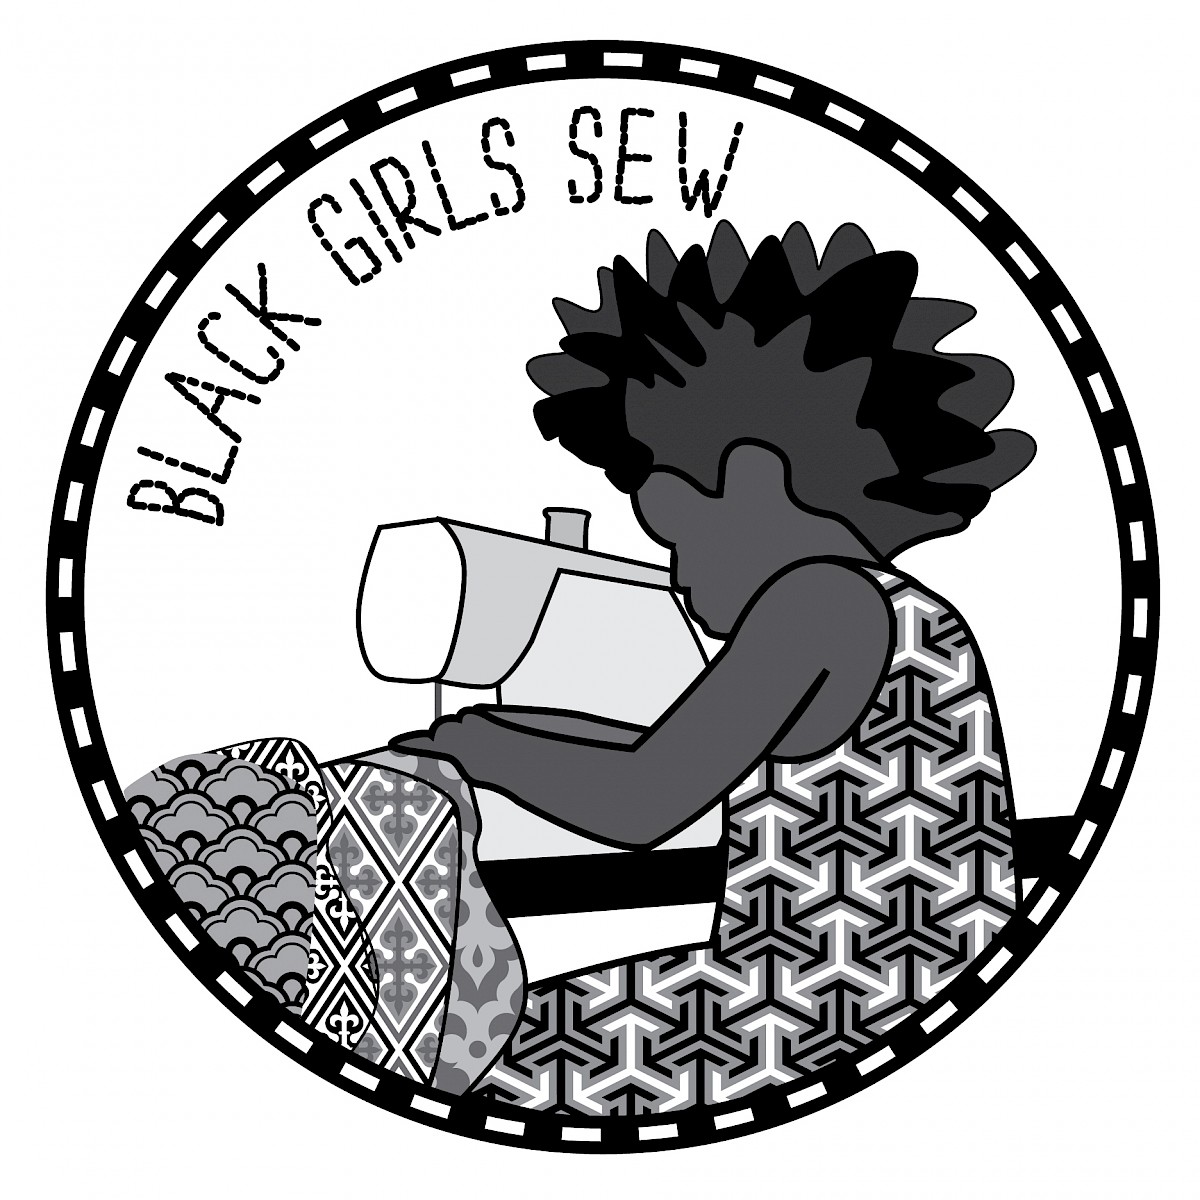 black-girls-sew.jpg